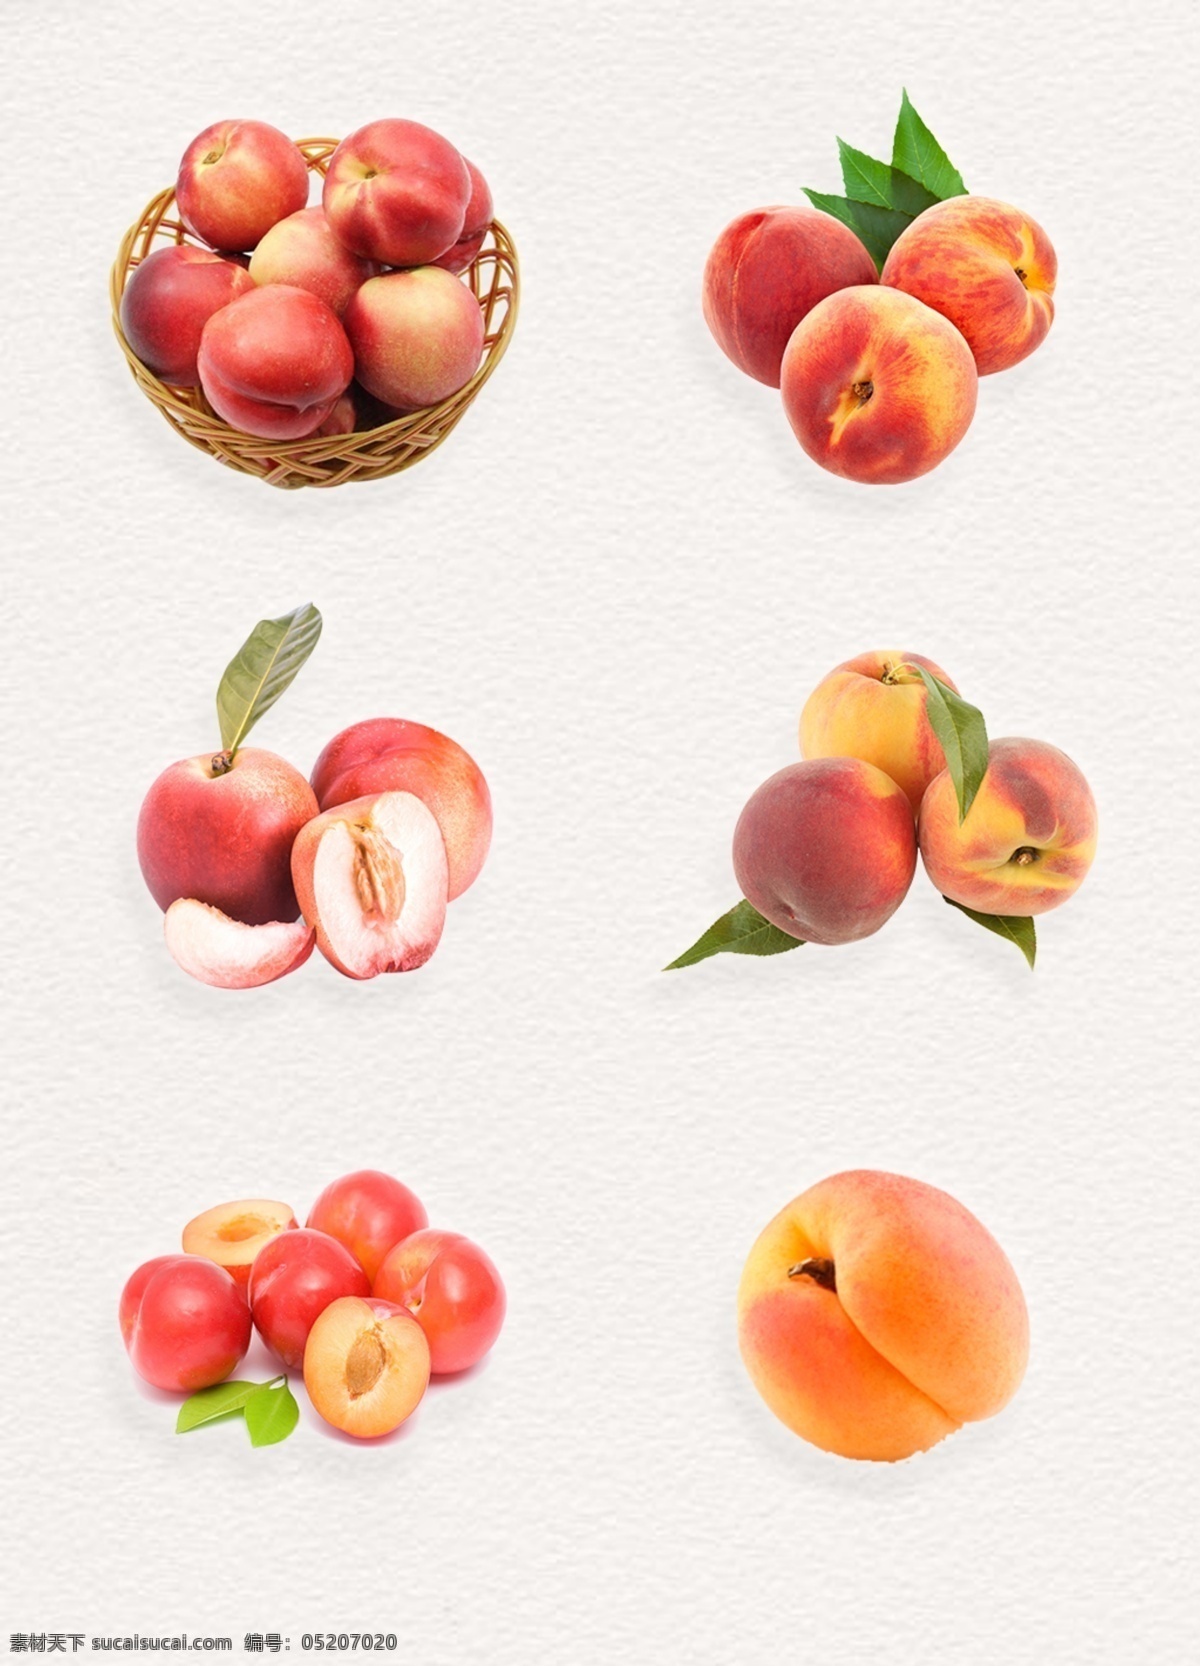 美味 饱满 桃子 产品 实物 元素 水果 产品实物 叶子 篮子里的桃子